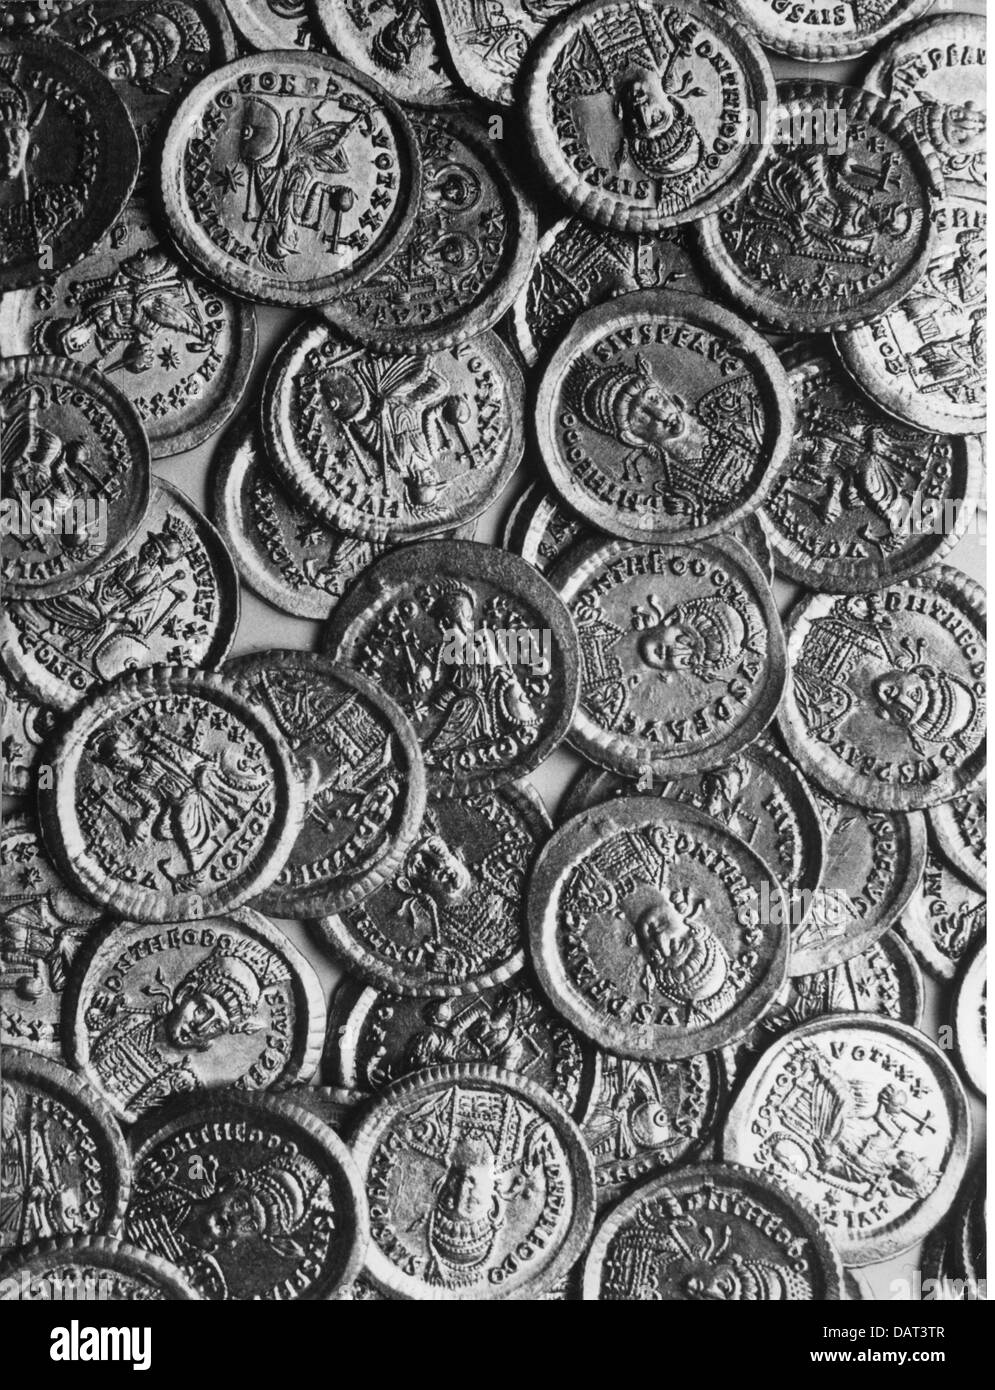 Il denaro / Finanze, monete, mondo antico impero romano, solido, oro, del V secolo D.C. con ritratto di imperatori Valentiniano III Foto Stock